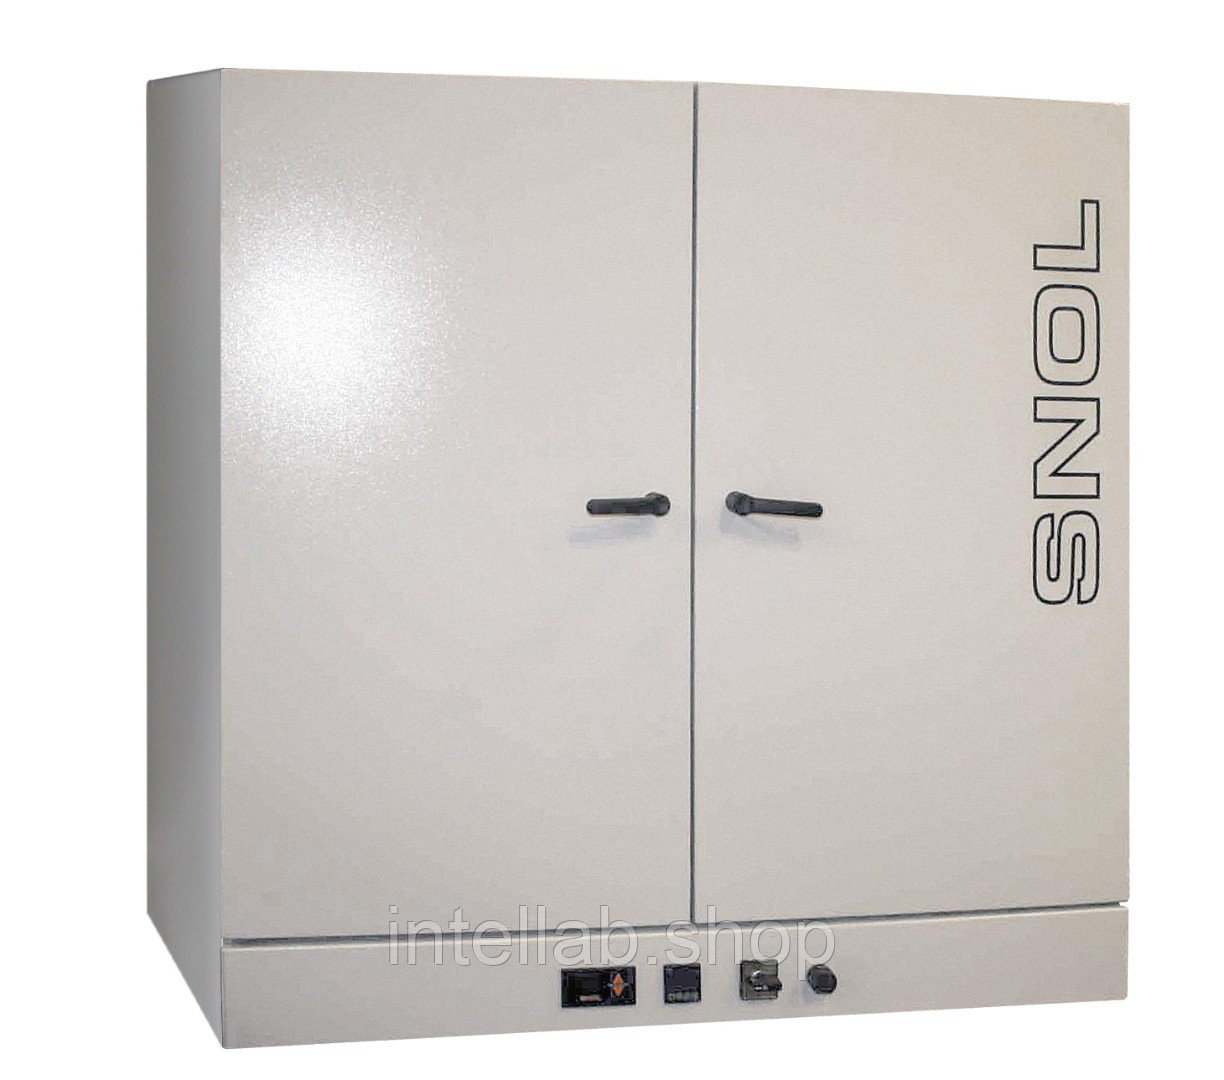 Электропечь сопротивления низкотемпературная лабораторная (сушильный шкаф), тип SNOL, модель 420/300 (LSN 11